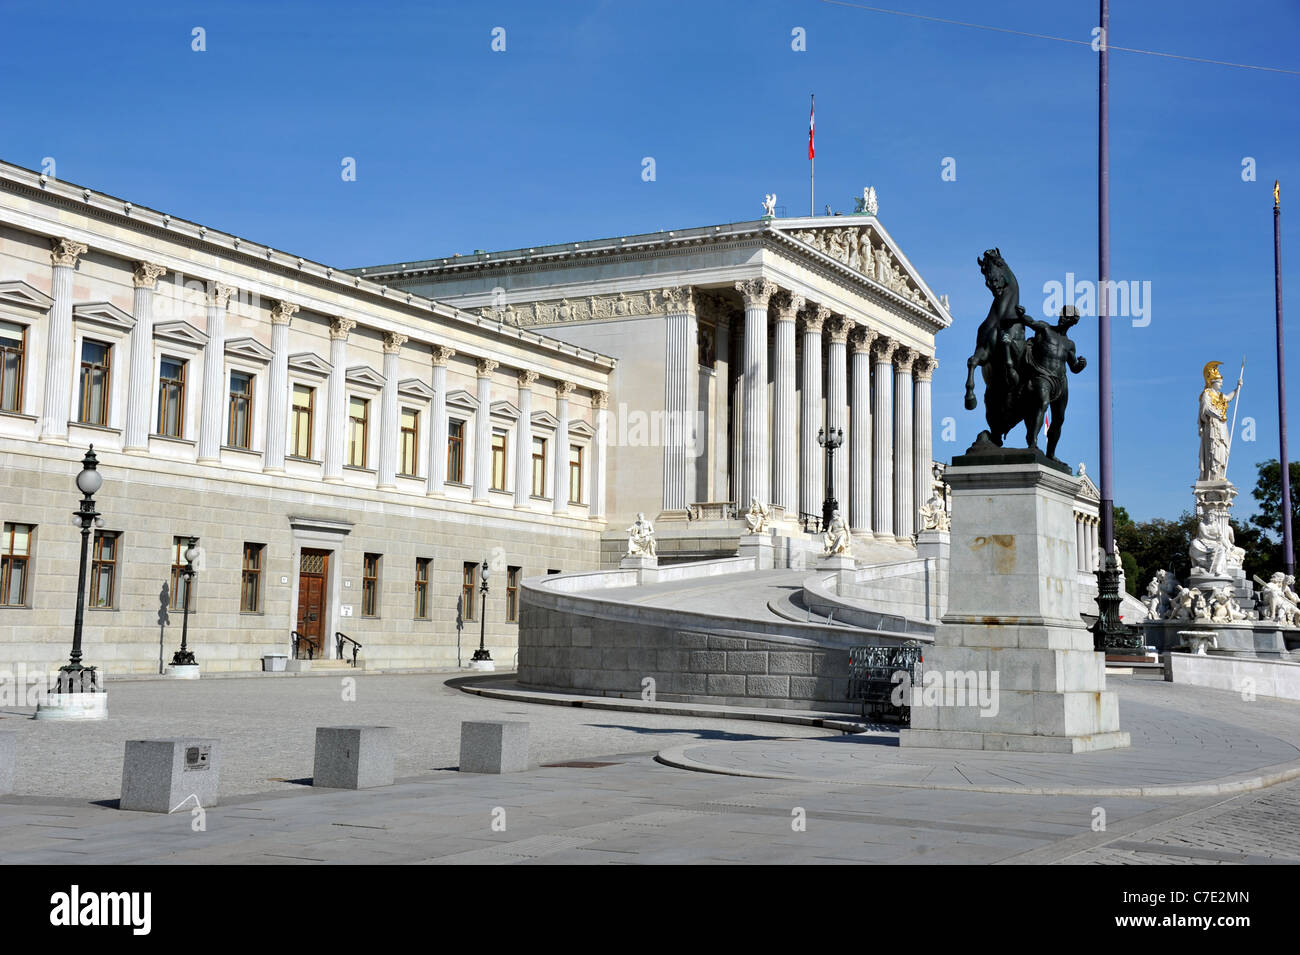 Bâtiment du Parlement autrichien, Vienne, Autriche, chambres du Parlement de l'Autriche. Banque D'Images